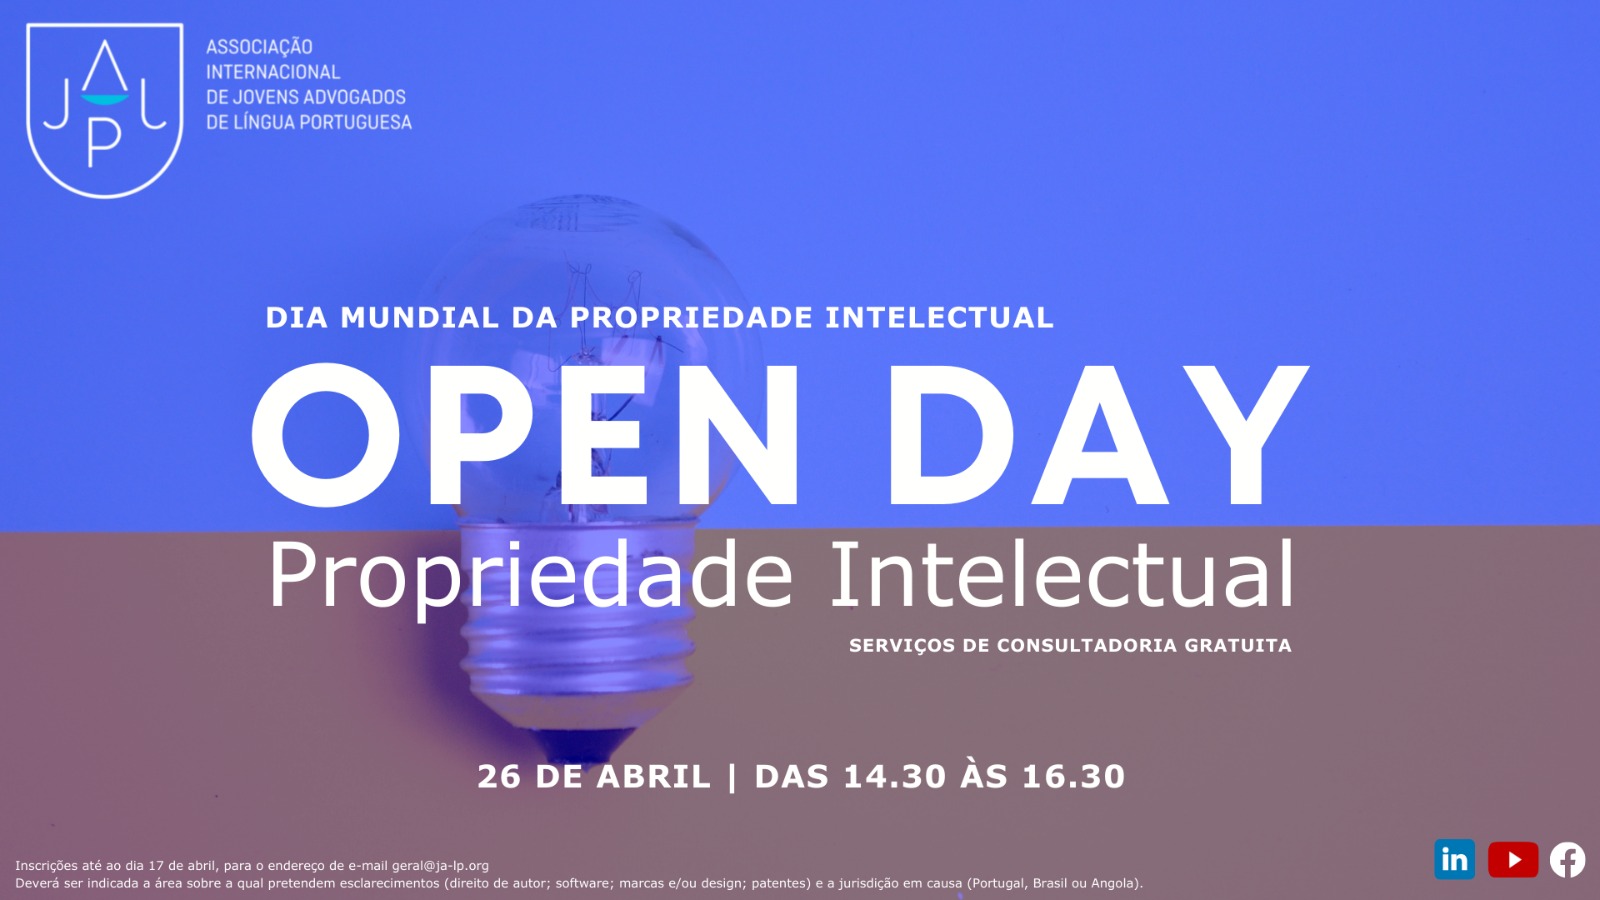 Propriedade Intelectual - Open Day, 26 de Abril 